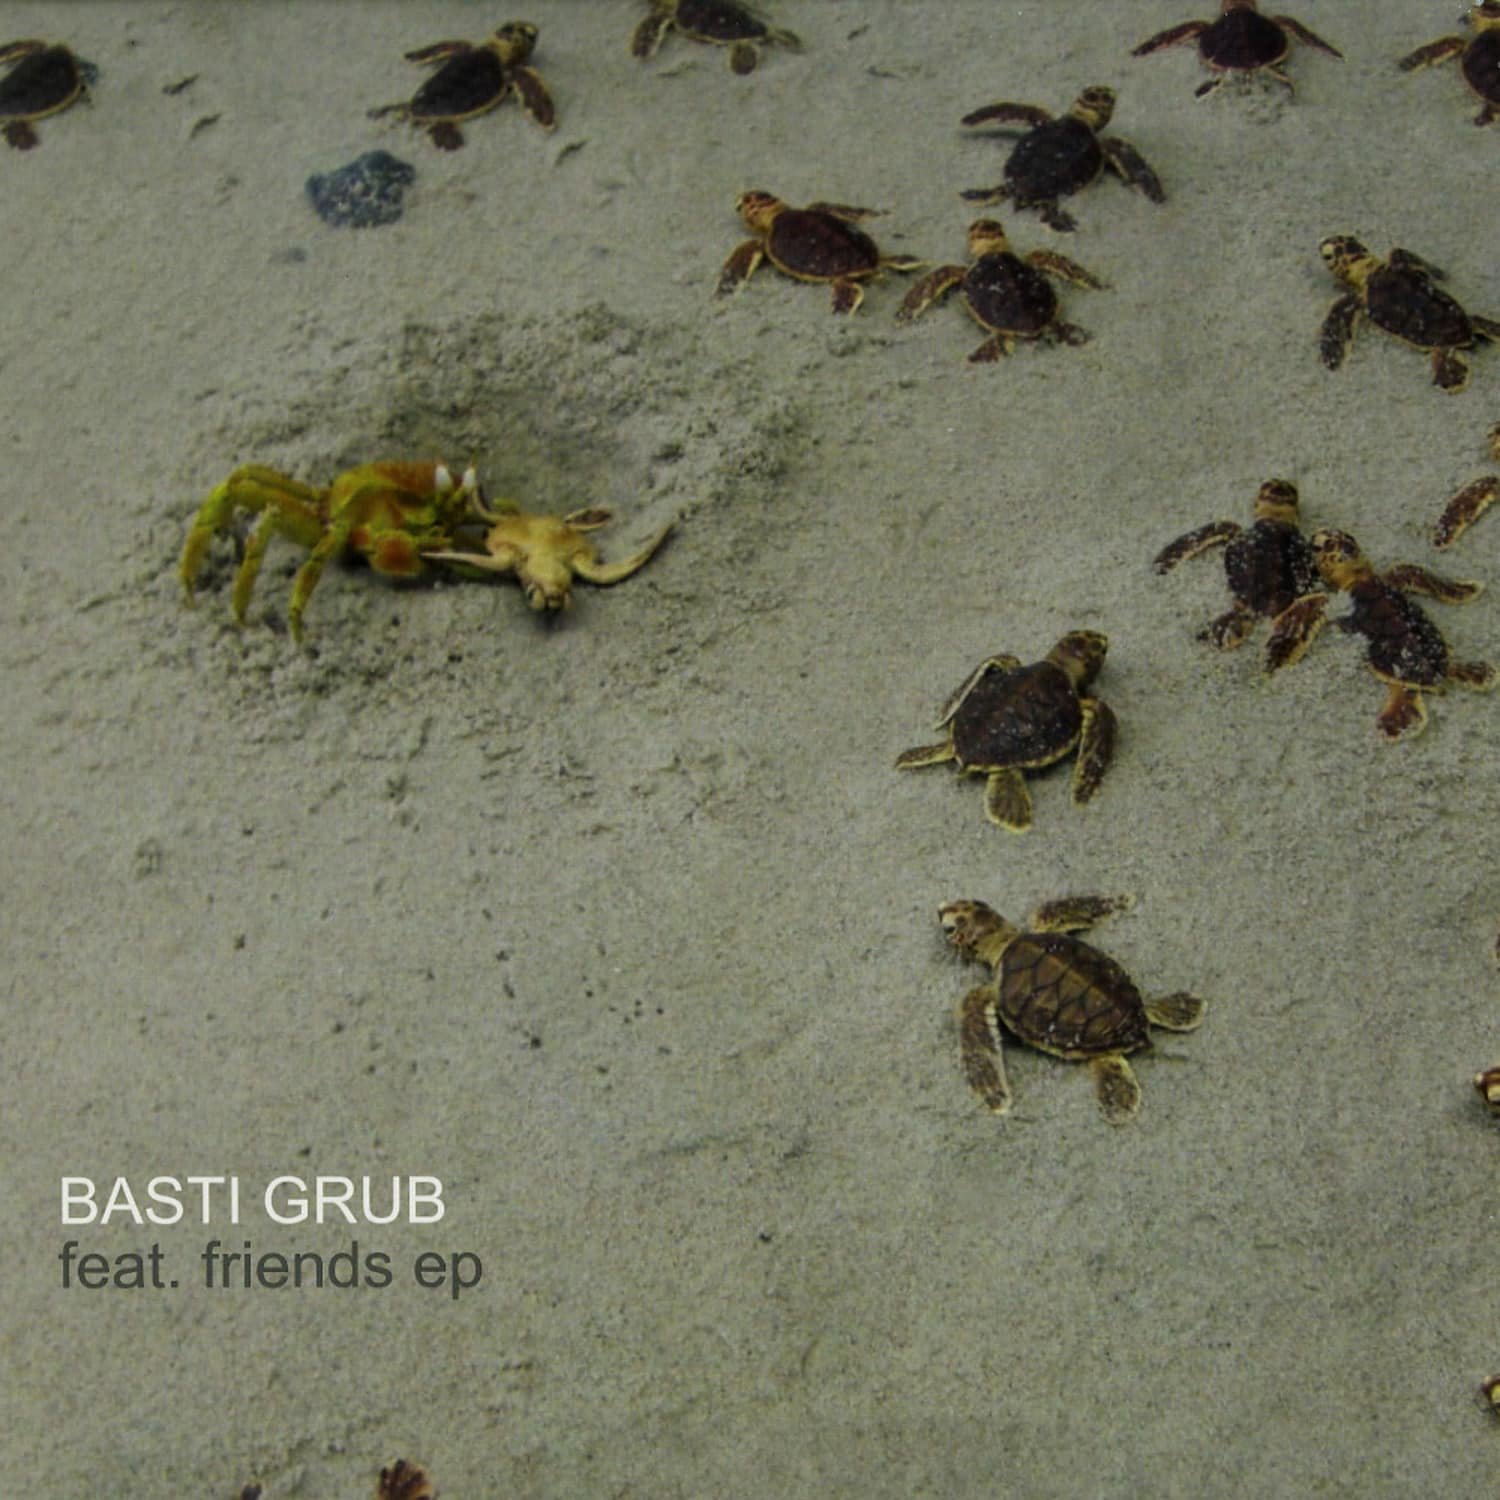 Basti Grub - FEAT. FRIENDS EP